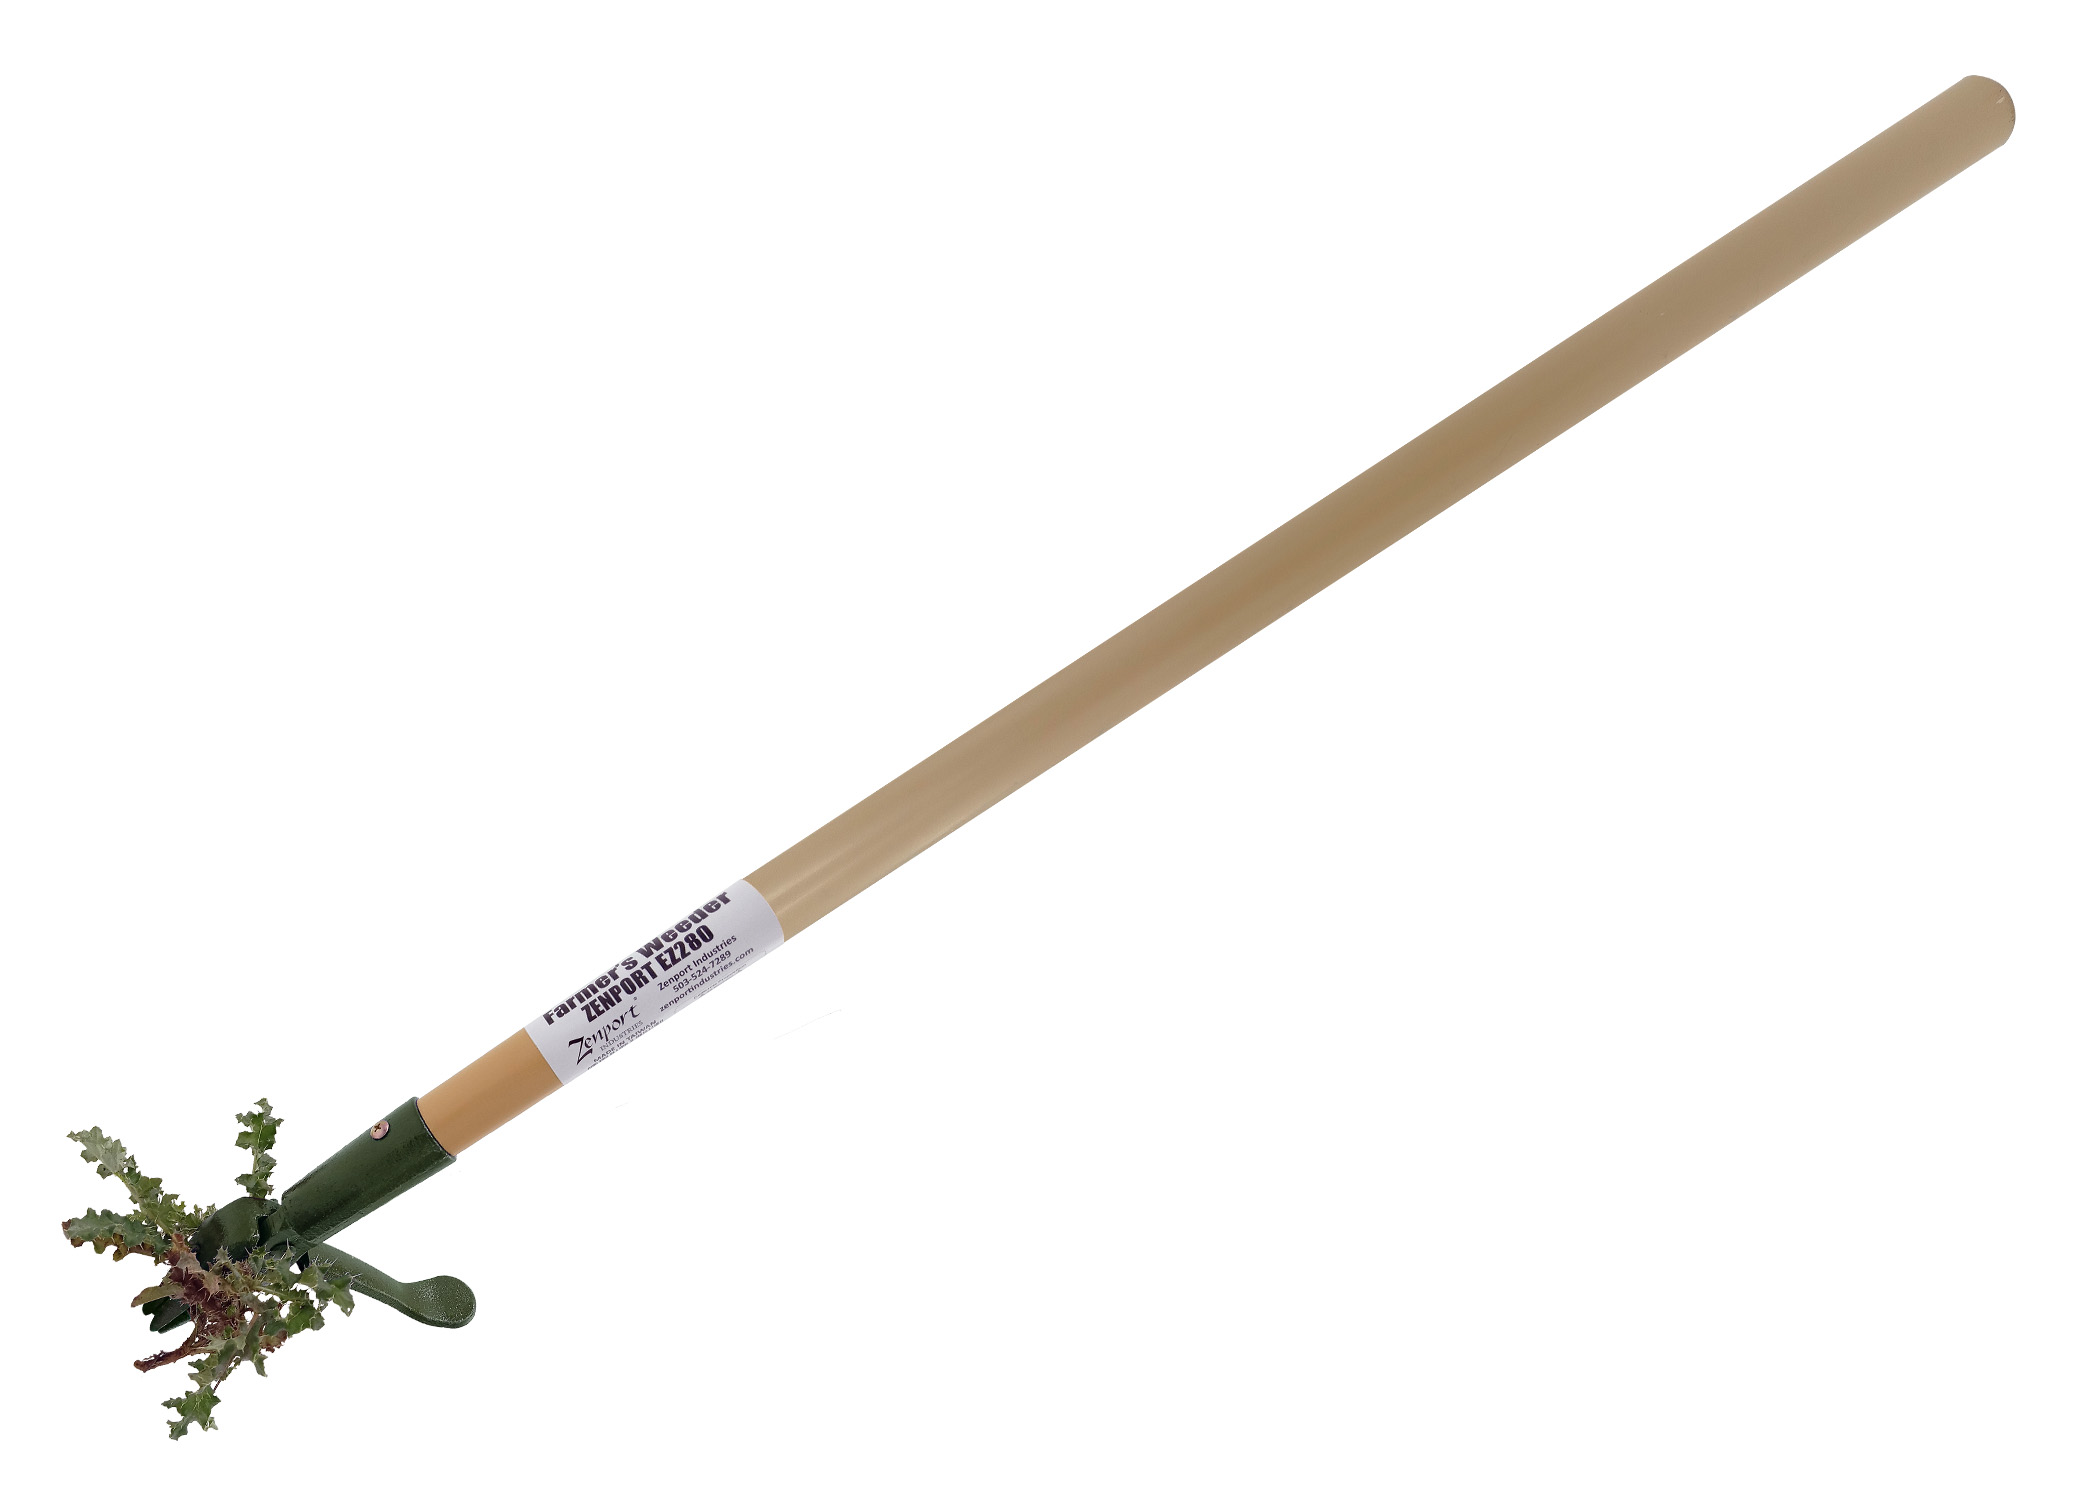 Zenport Farmers Weeder EZ280 Stand-Up Weeding Tool, 48-Inch Wood Handle